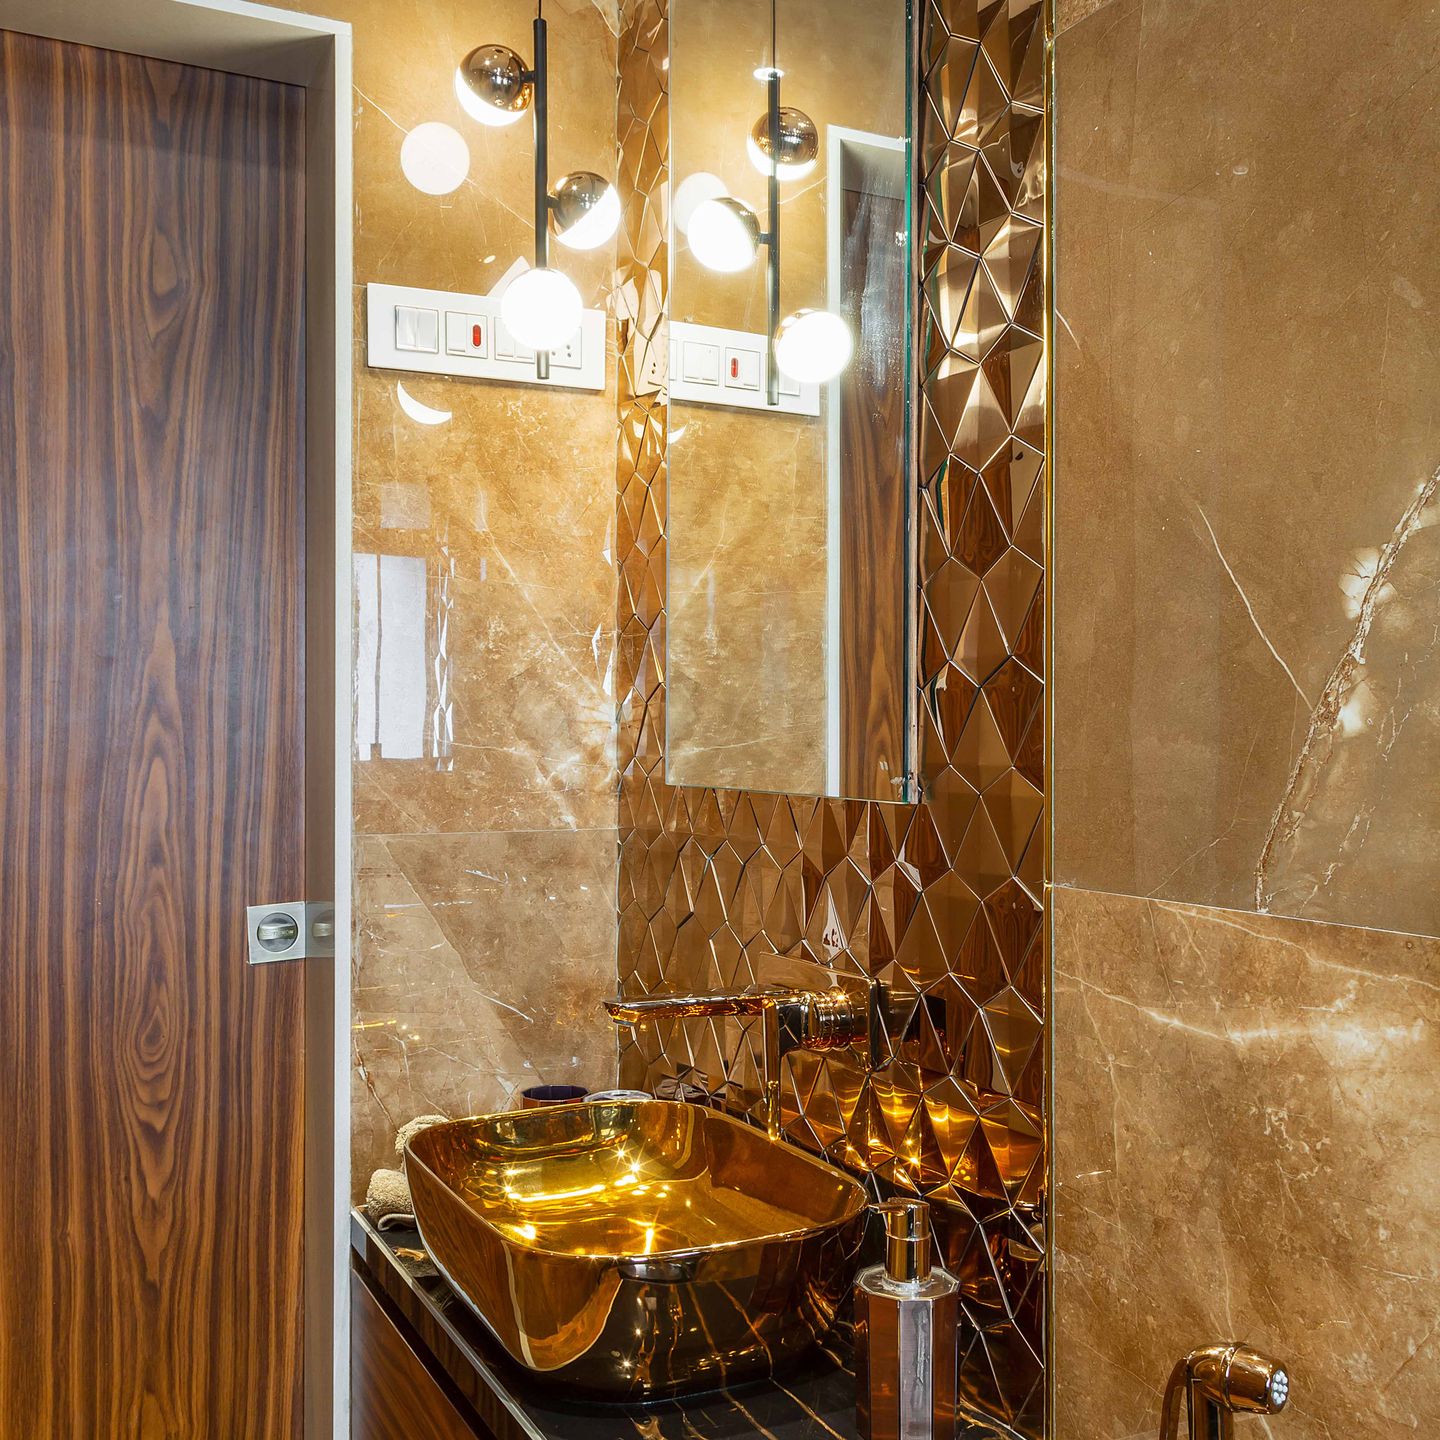 Brown Bathroom Tile Design With Wooden Details - Livspace